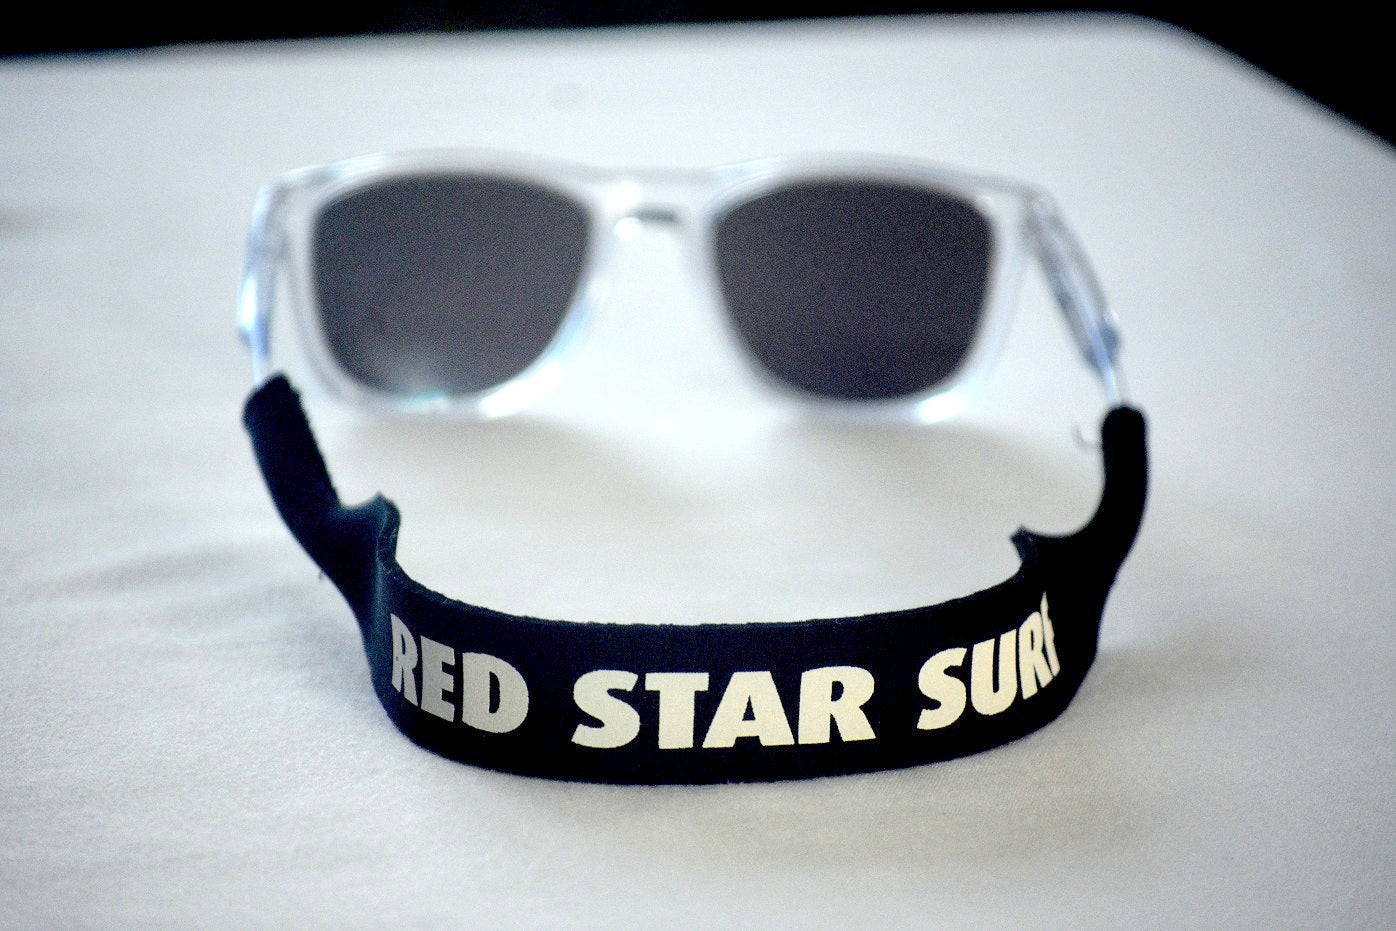 Red Star Surf - Cinta de gafas para Kitesurf